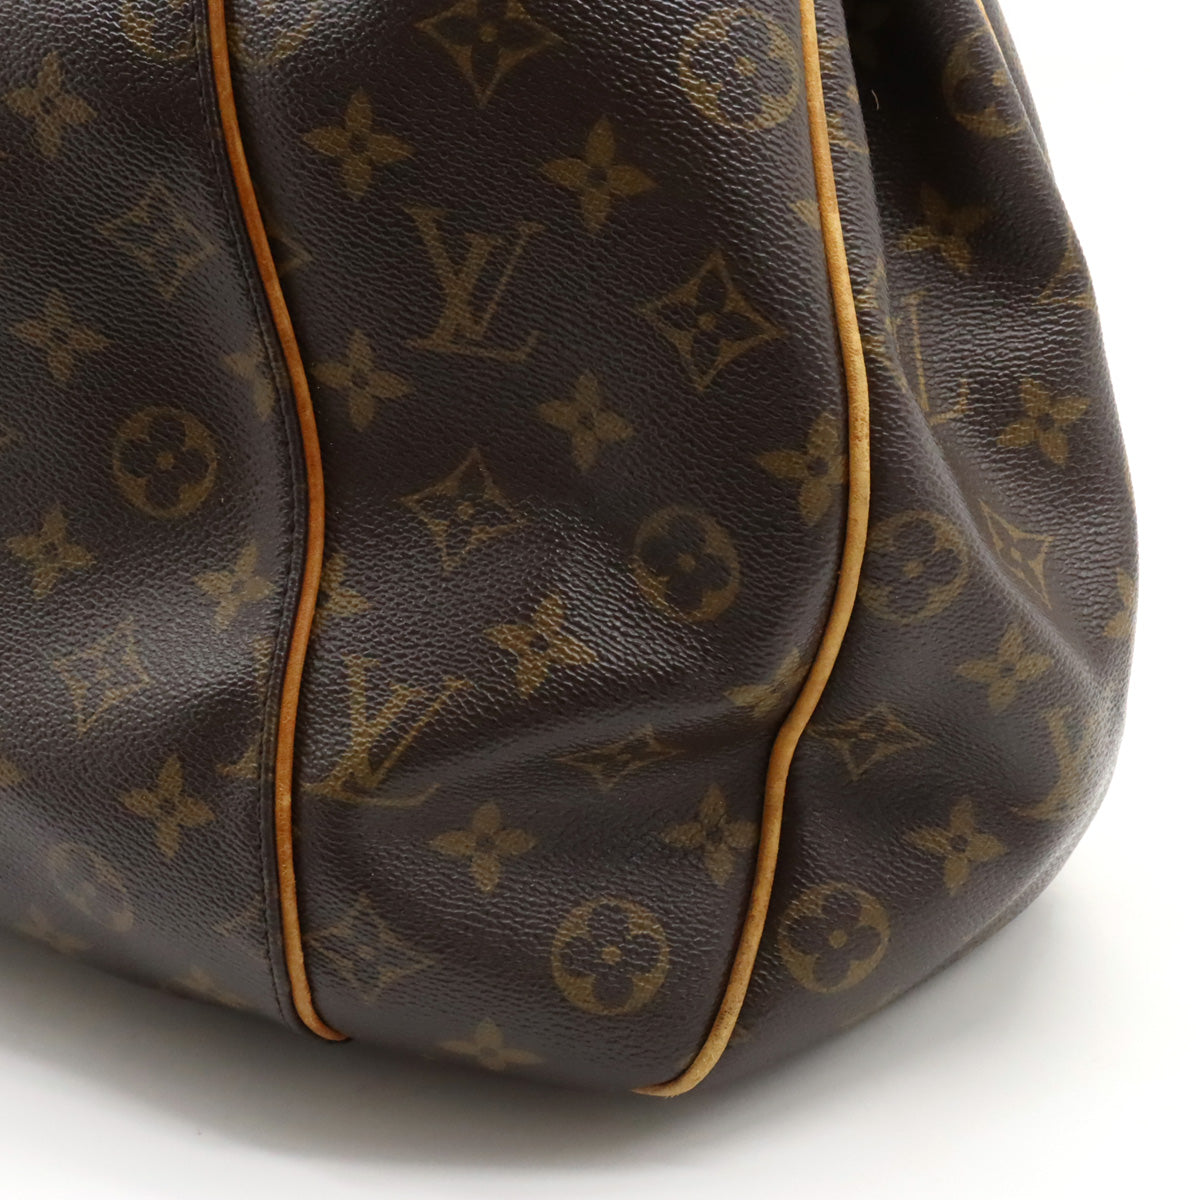 Louis Vuitton, Bags, Authentic Louis Vuitton Galliera Pm Monogram  Shoulder Bag